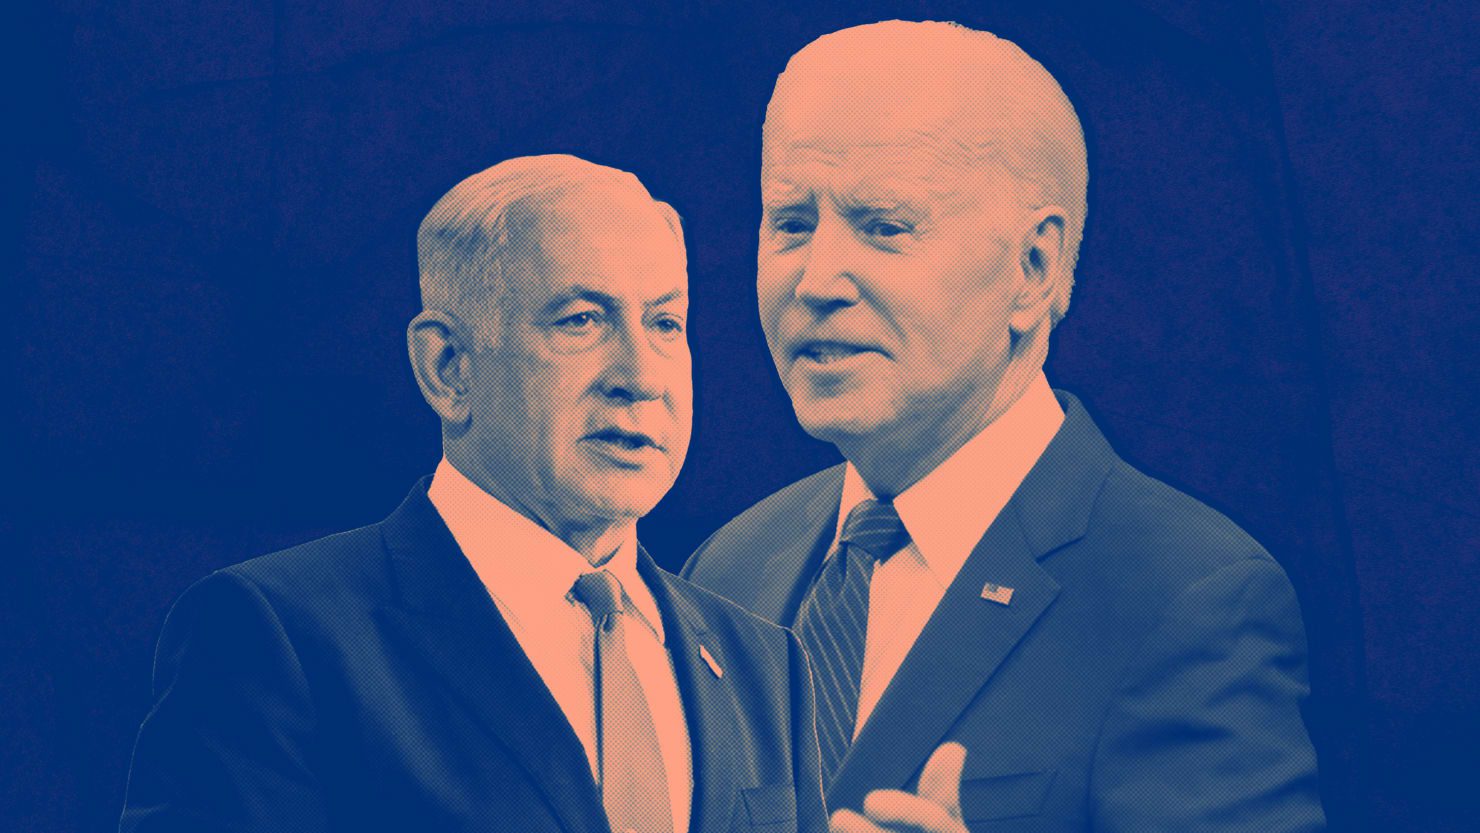 Si continúan los ataques de Bibi a la democracia, Biden debería considerar retener la ayuda a Israel